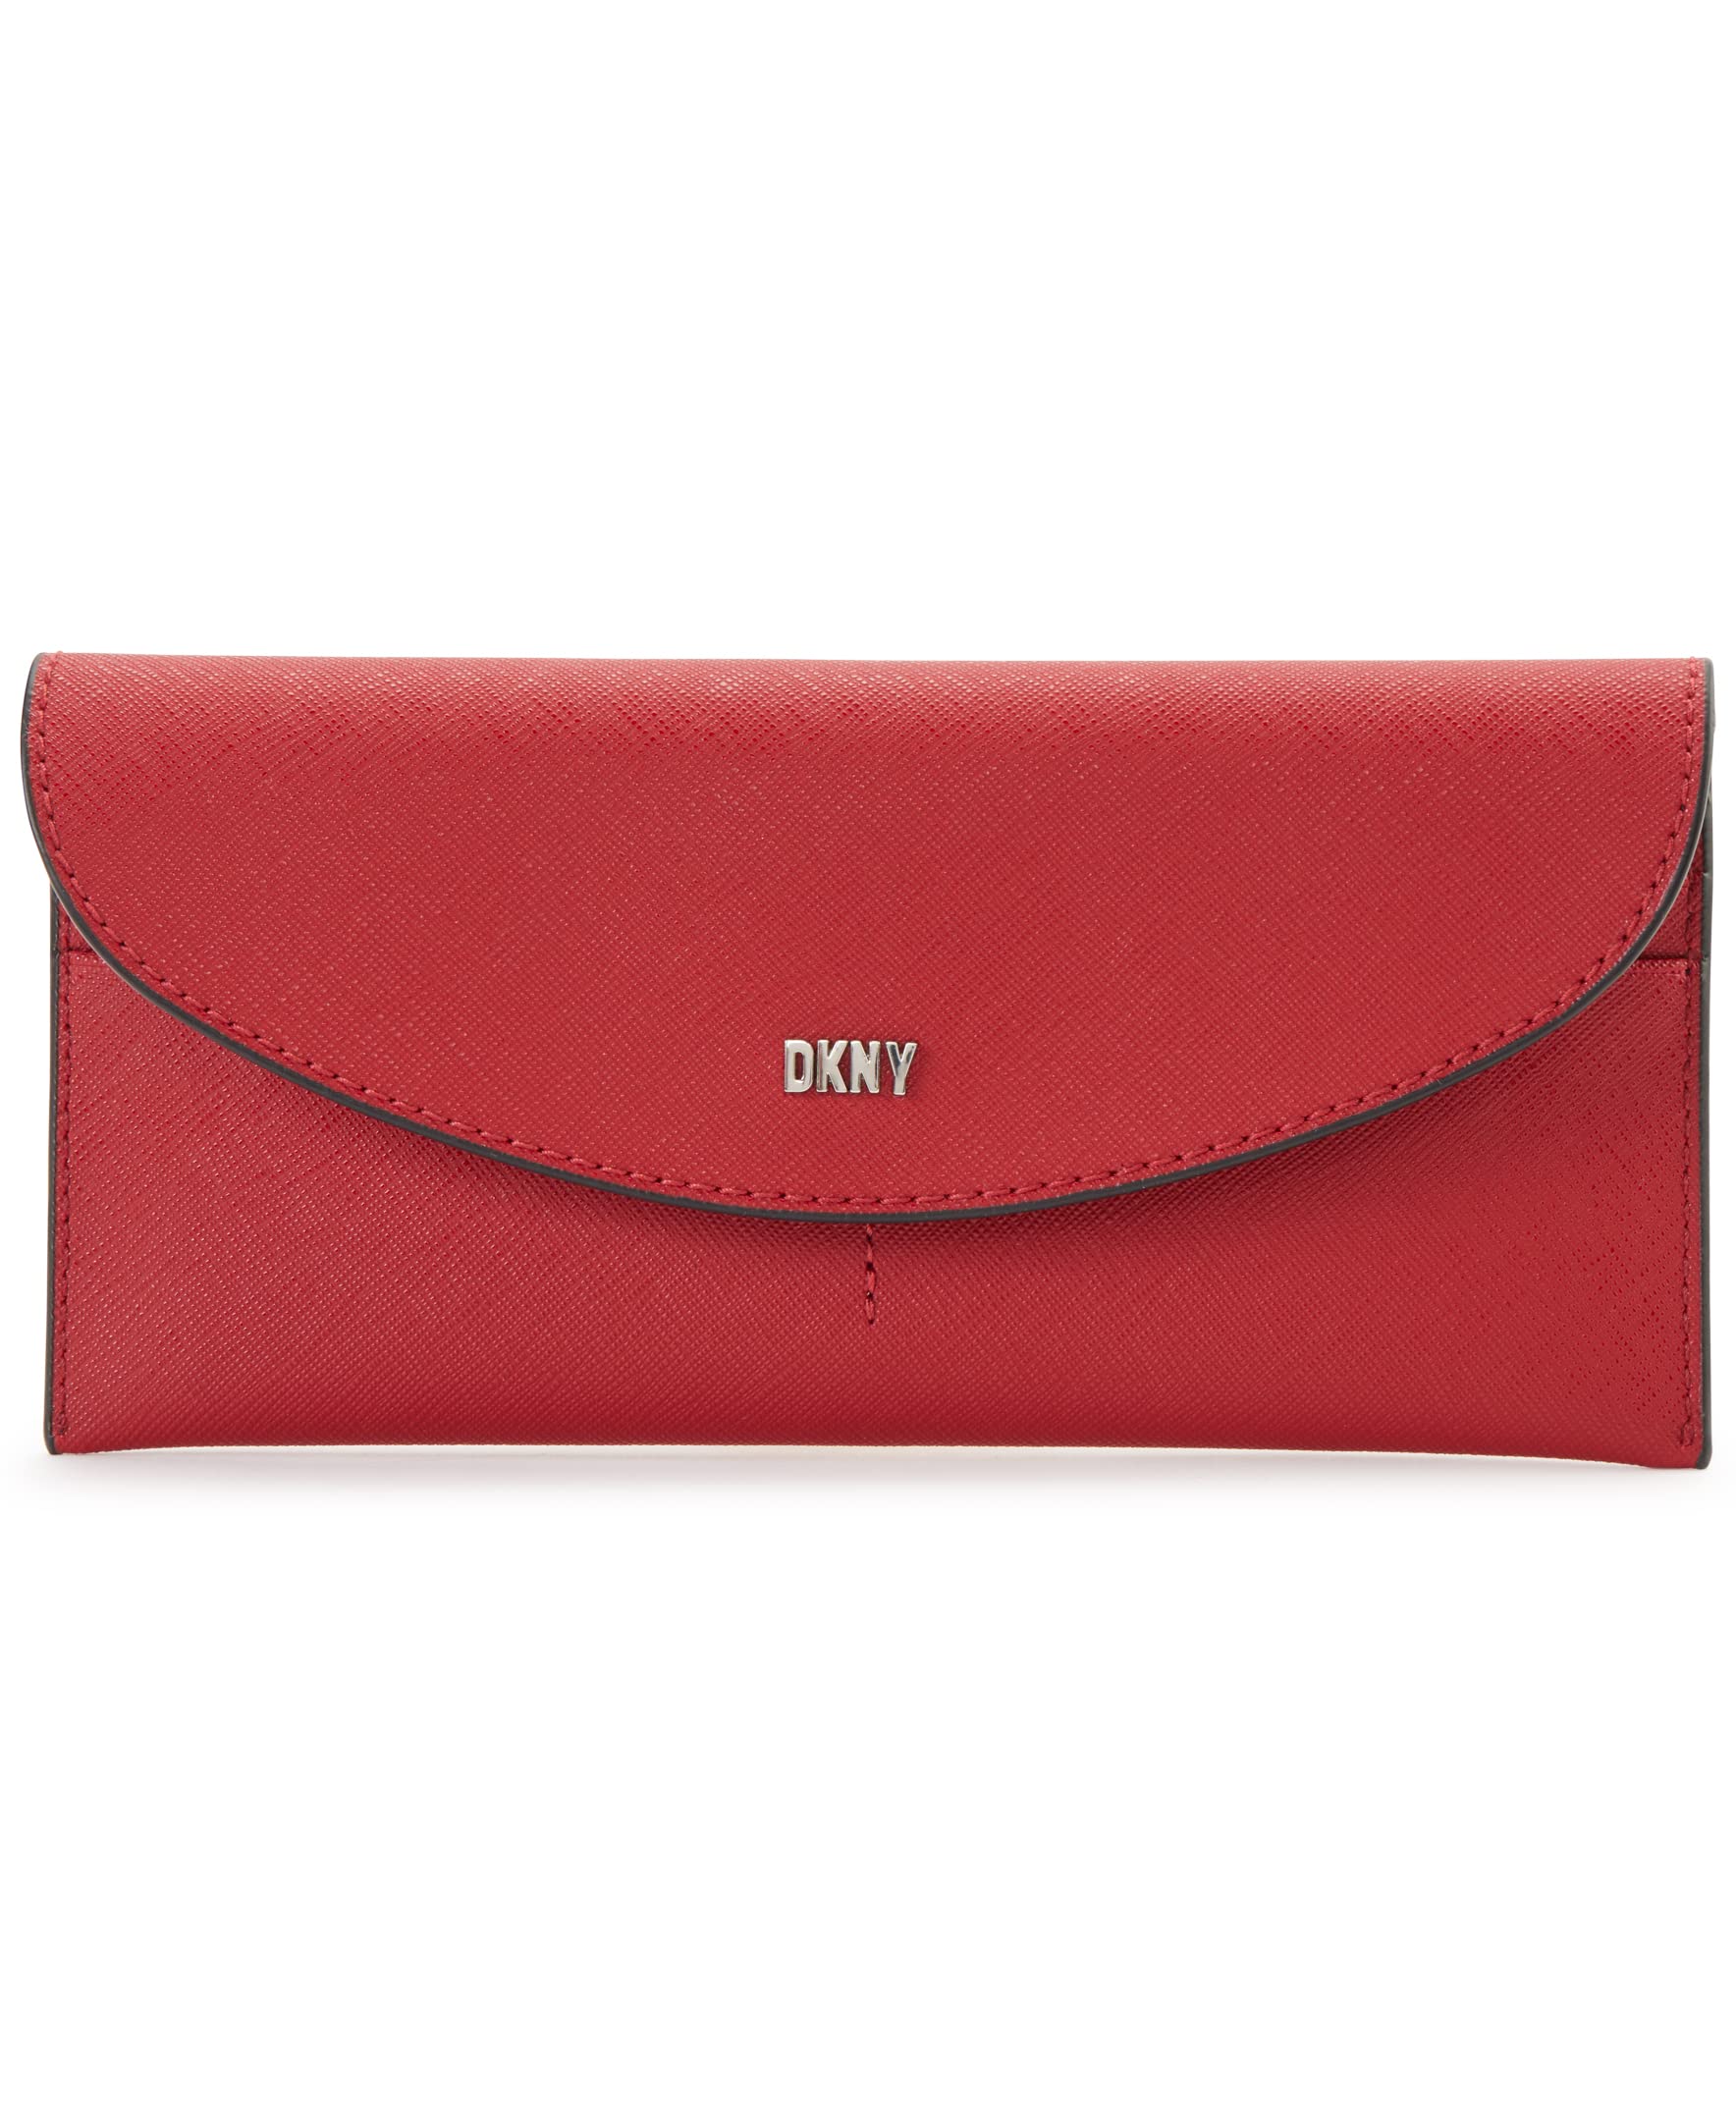 DKNY Women's Casual Phoenix Flap Classic Wallet